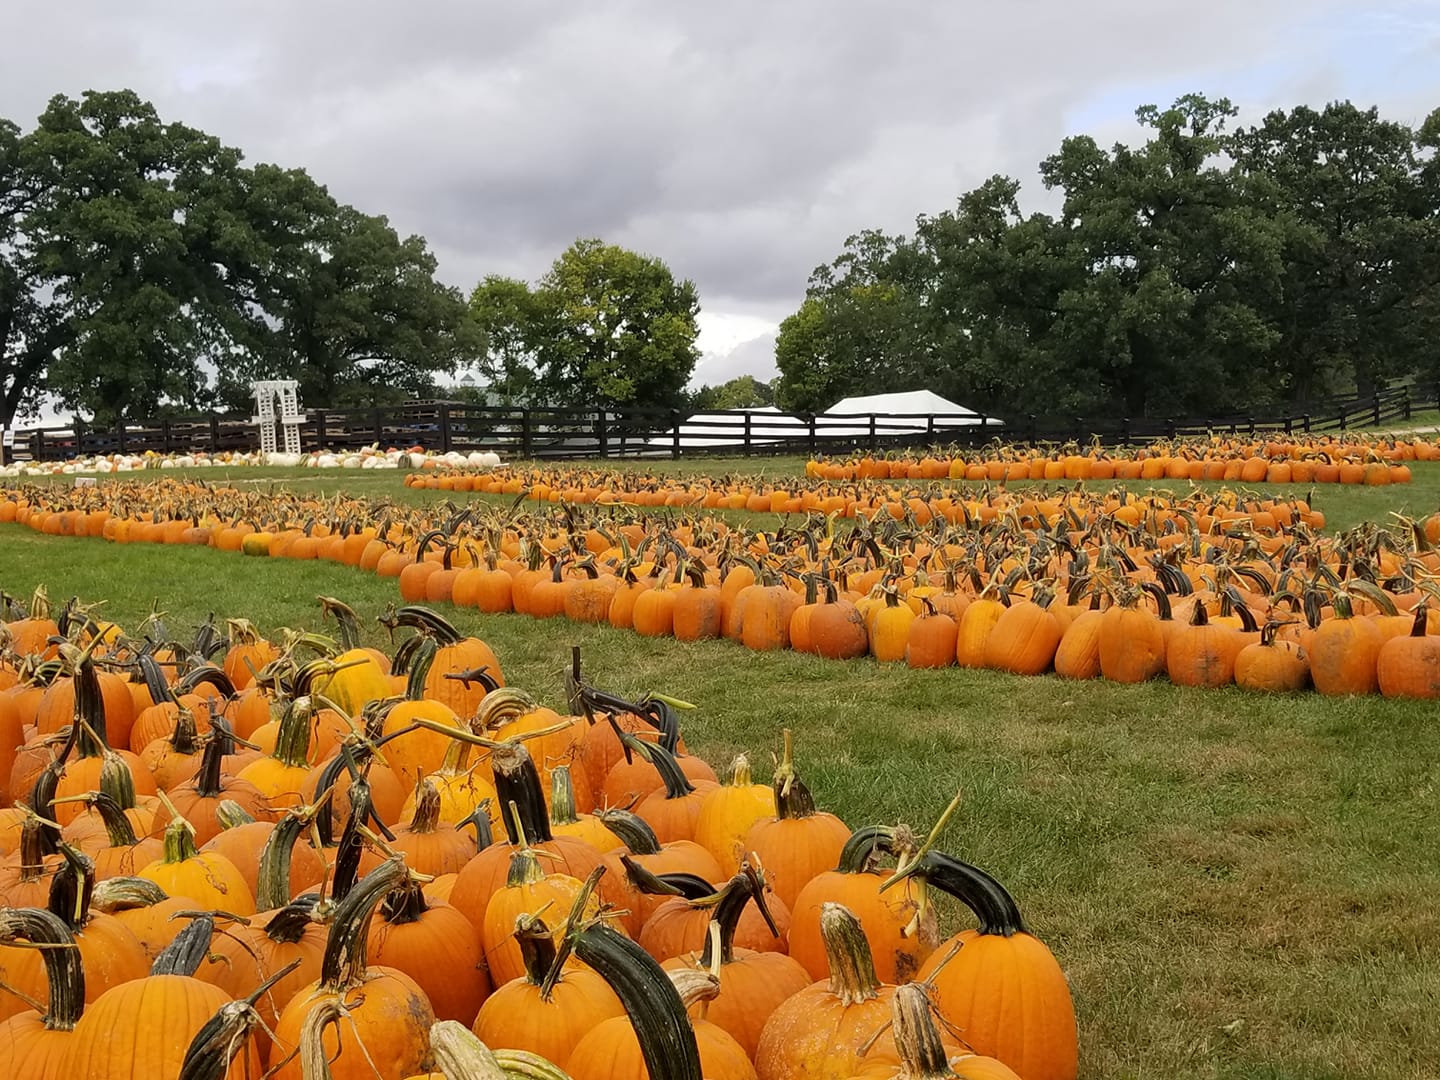 A field of pumpkins on a farm